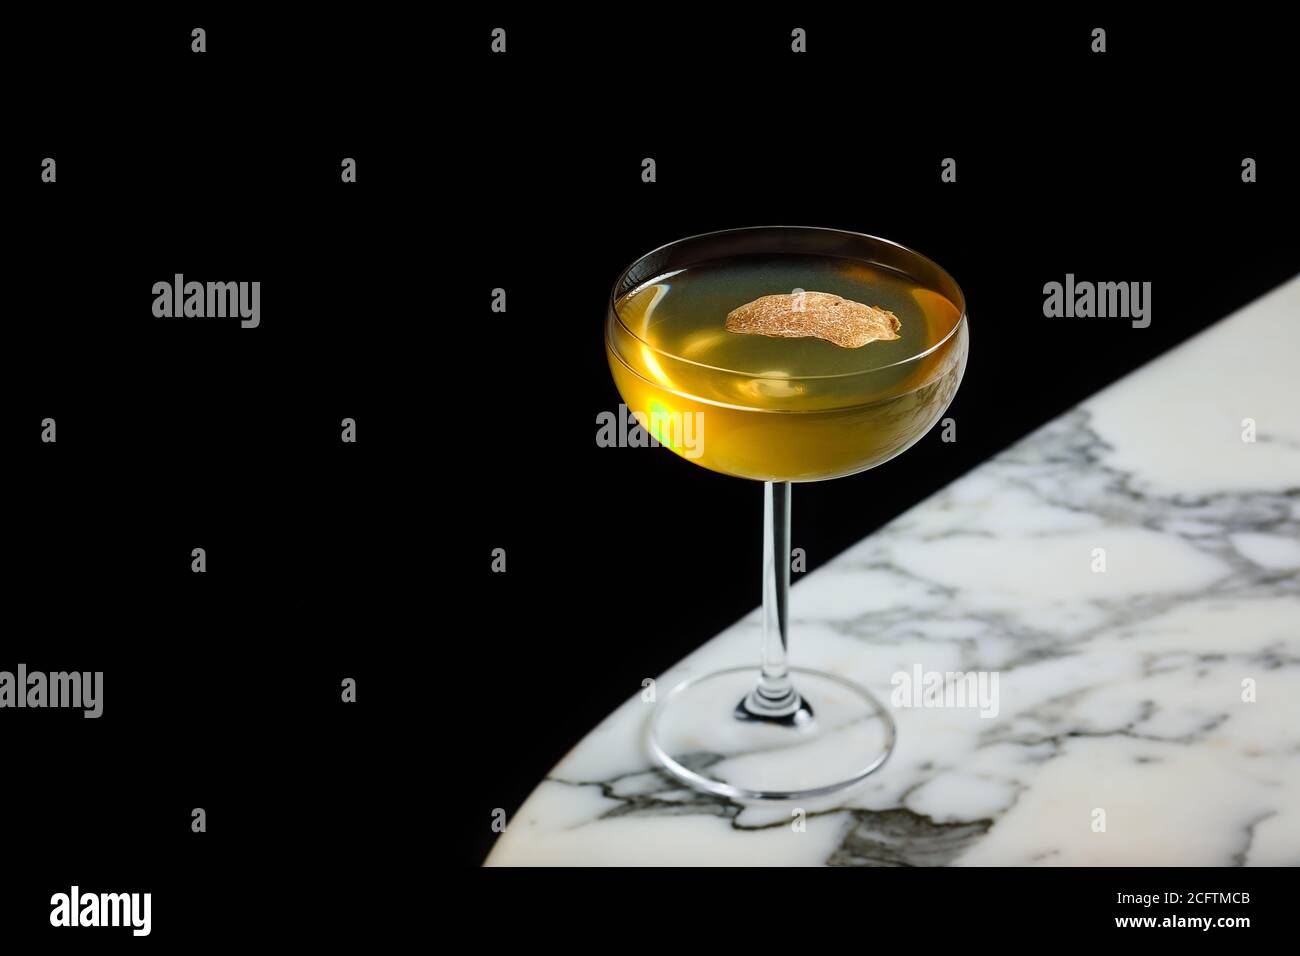 Une petite boisson est servie dans un verre à cocktail avec un blanc truffe Banque D'Images